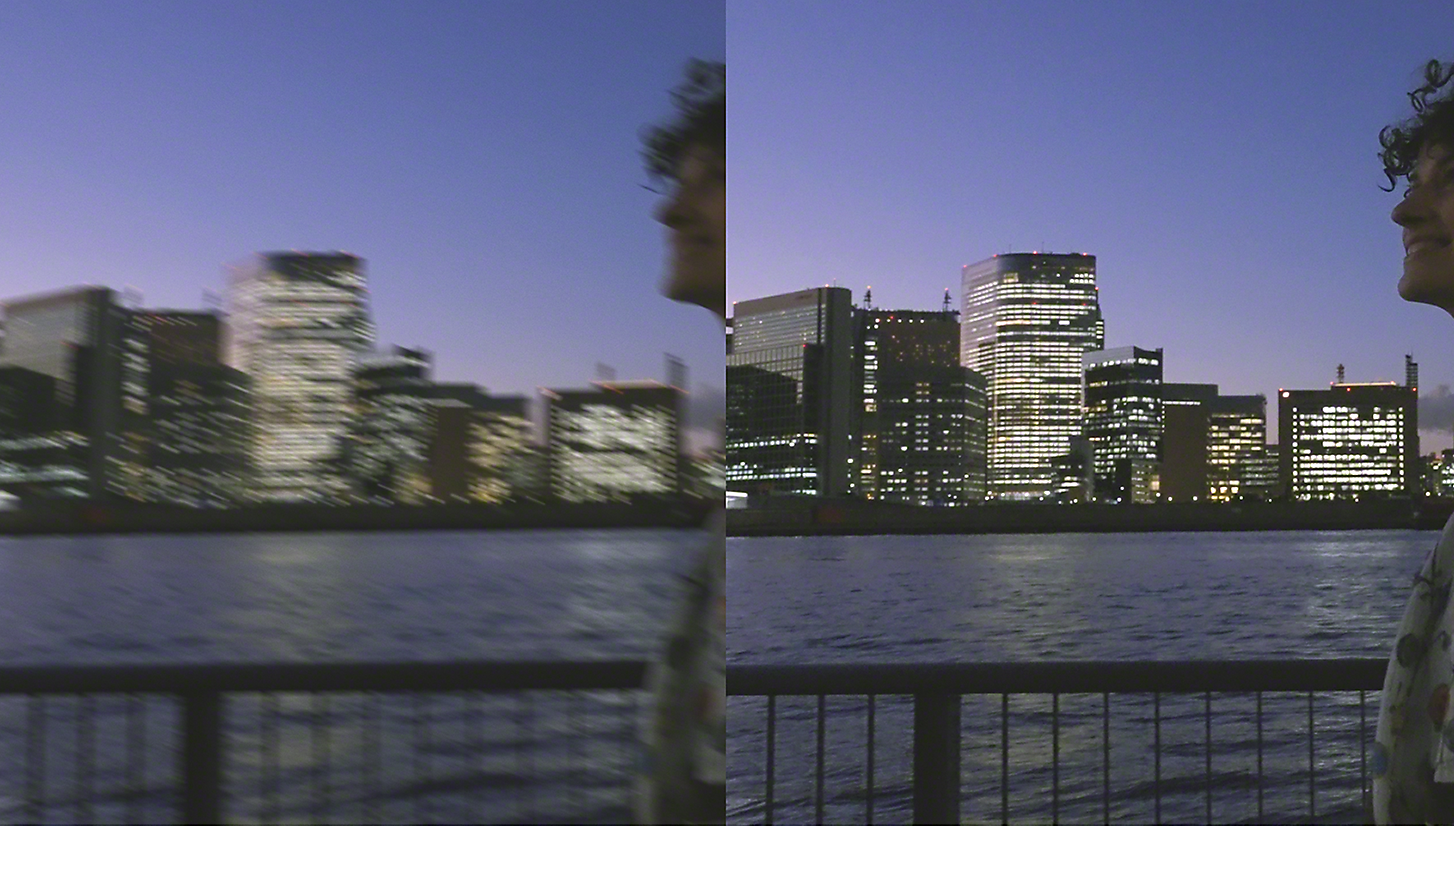 夜間城市景觀的雙重影像；左側影像模糊，右側影像清晰鮮明